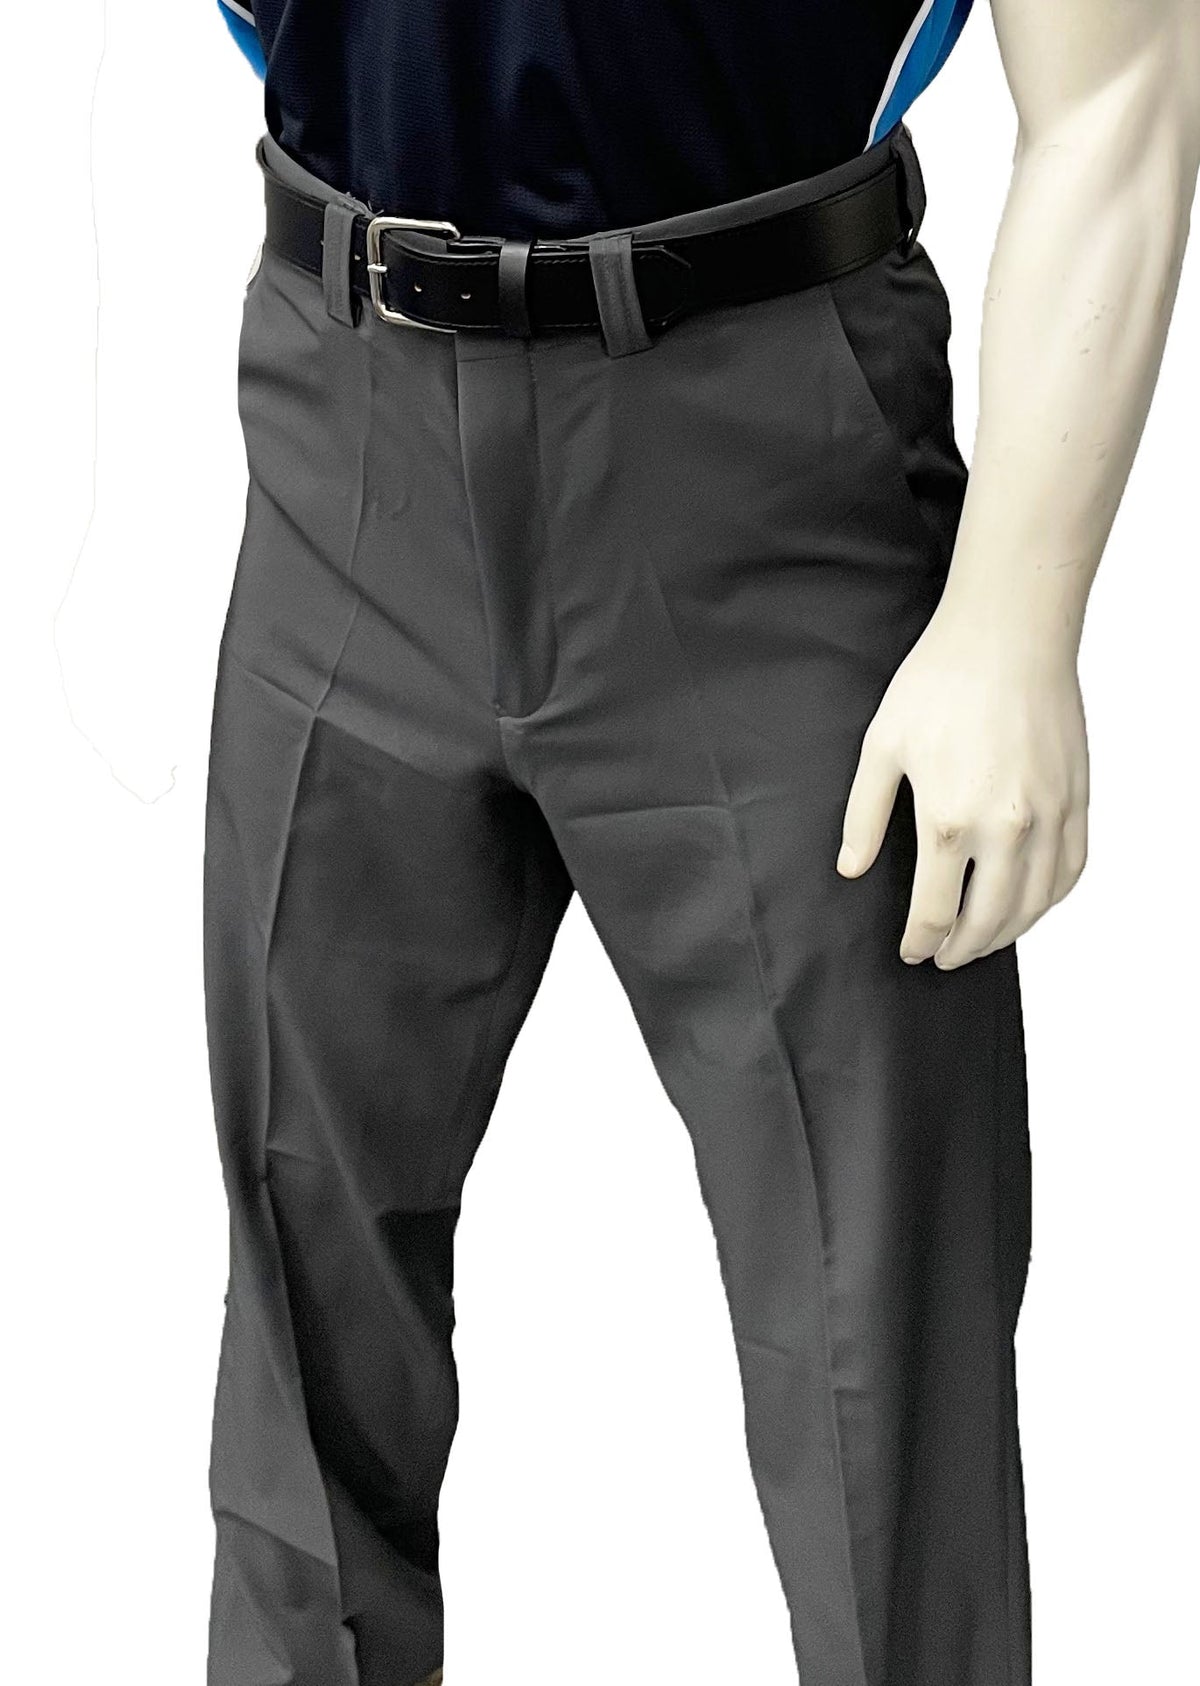 smitty | BBS-355 | Pantalones de árbitro con placa frontal plana y elásticos en 4 direcciones | Gris carbón 